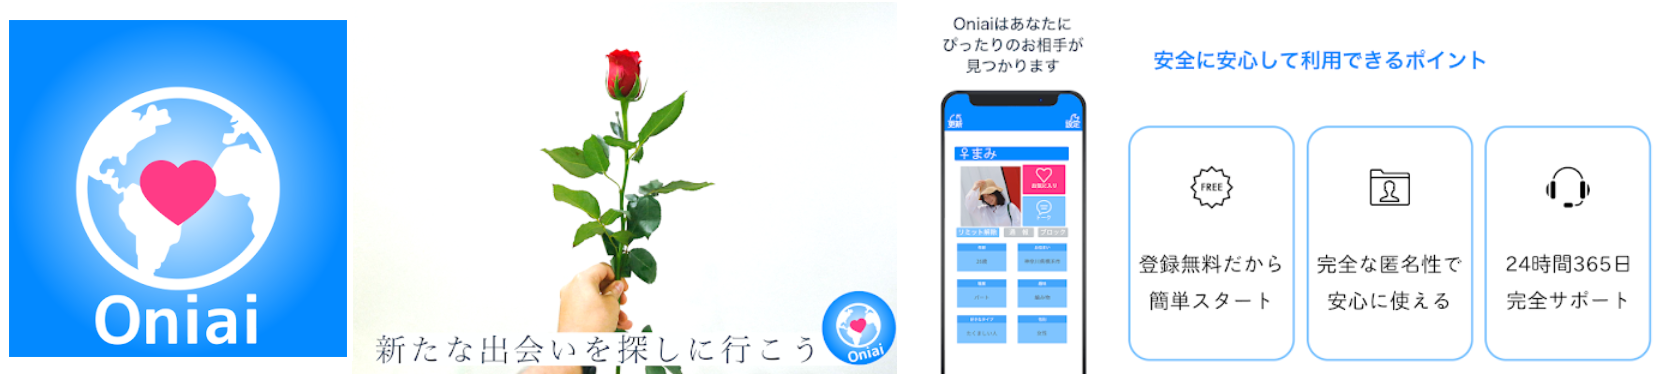 出会い系アプリ「oniai」